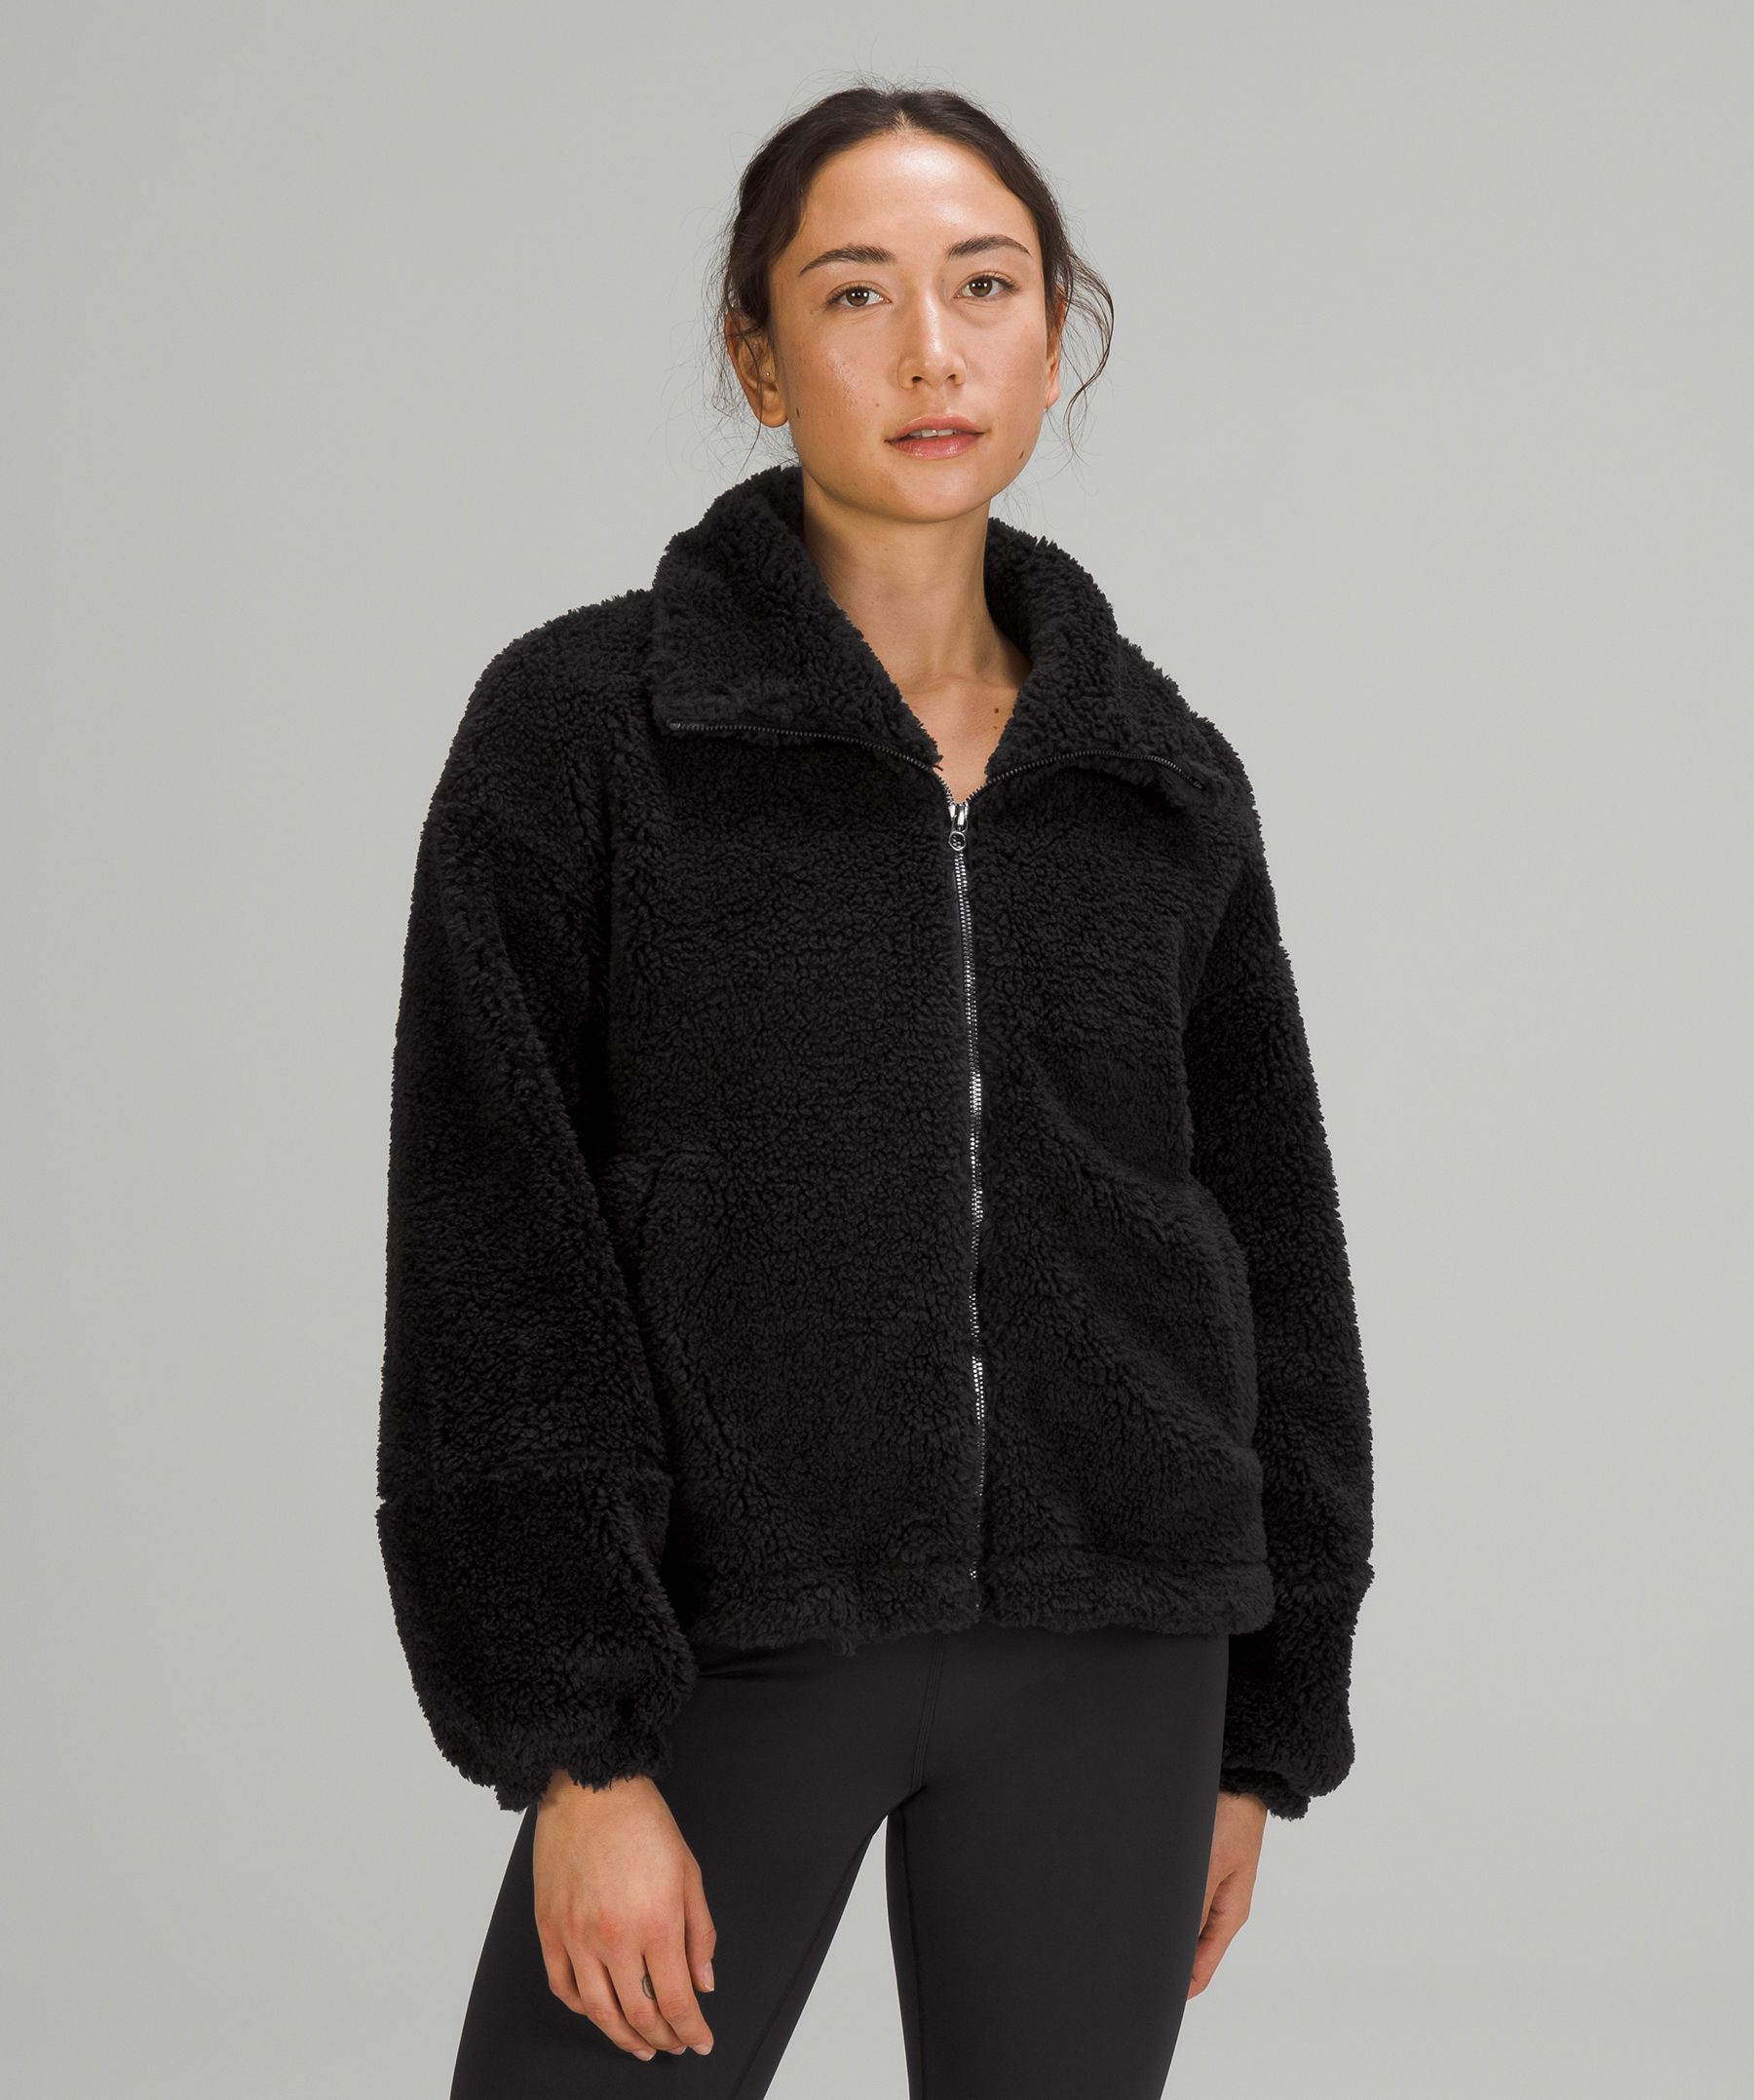 Cinchable Fleece Zip-Up | Women's Hoodies & Sweatshirts | lululemon